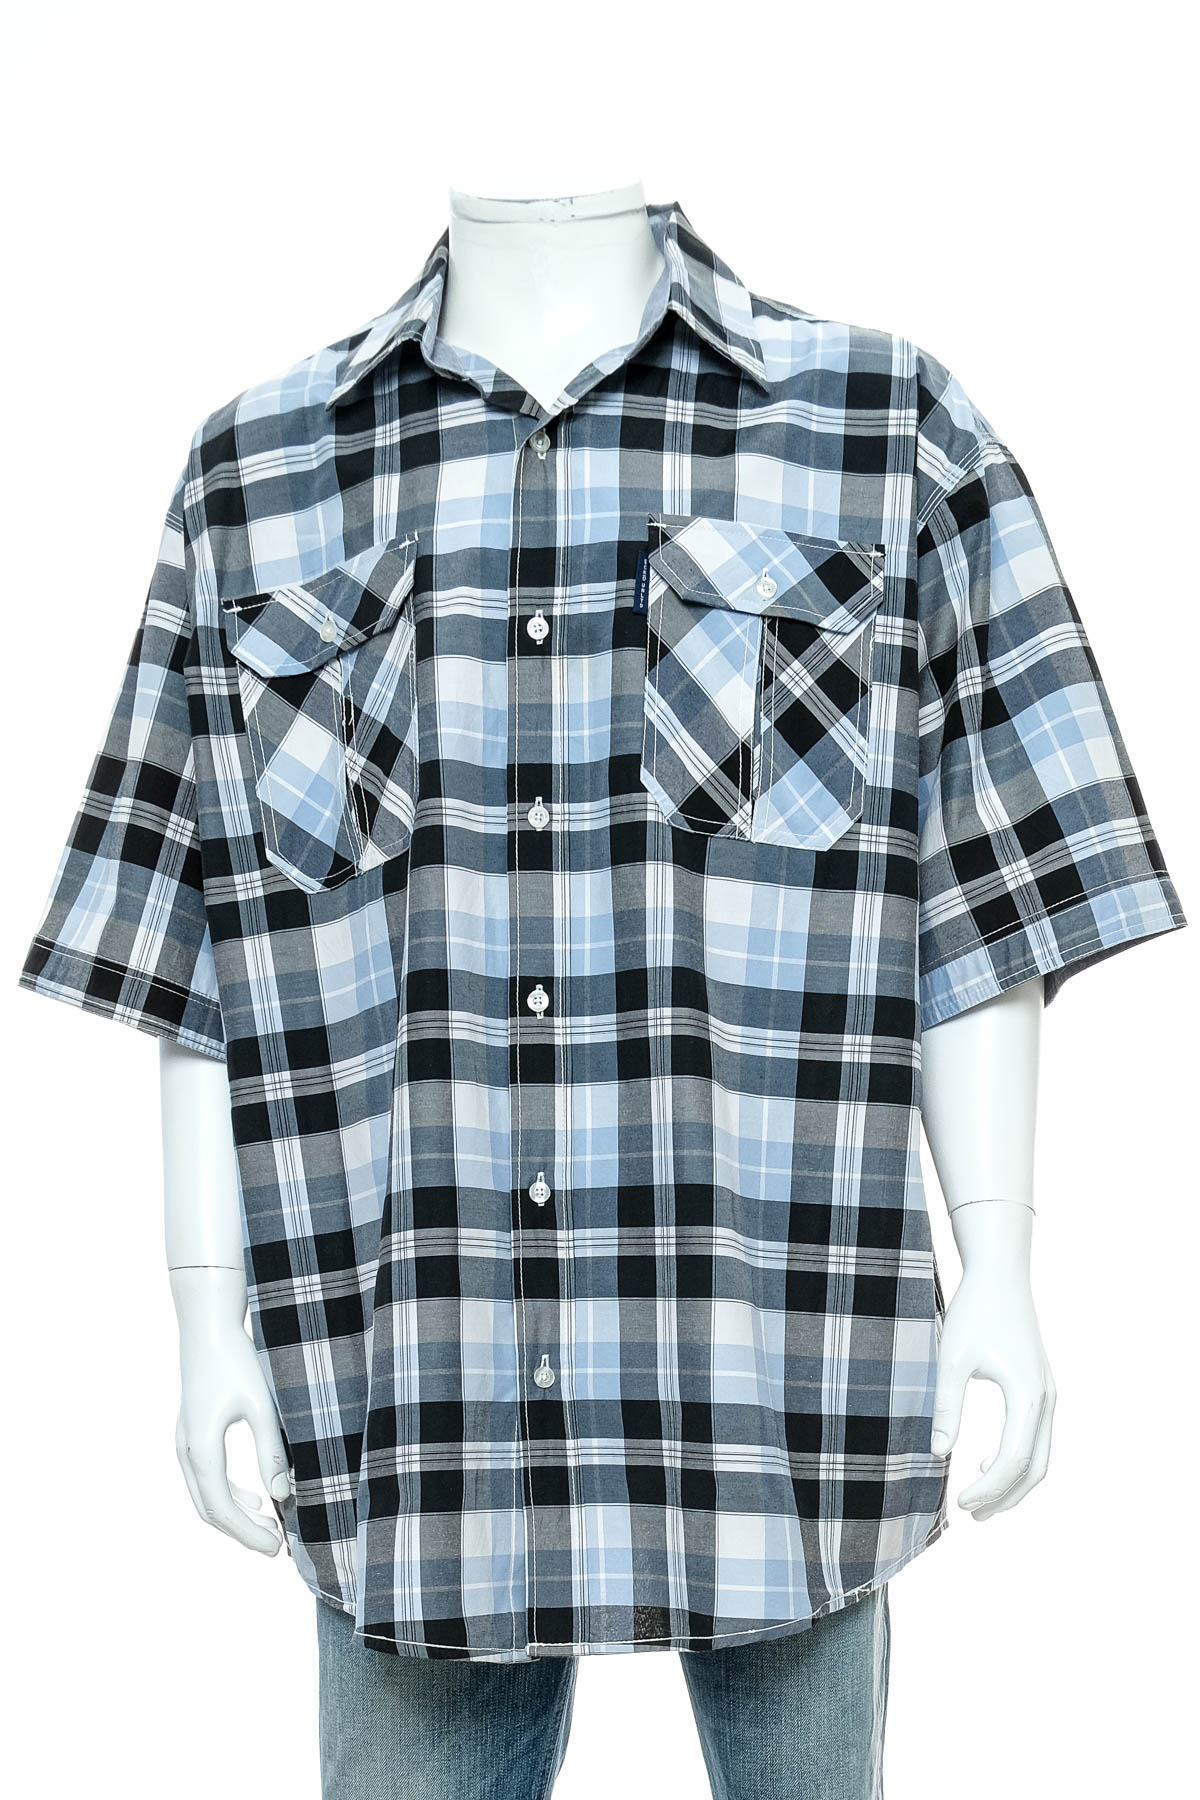 Ανδρικό πουκάμισο - Ecko Unltd - 0